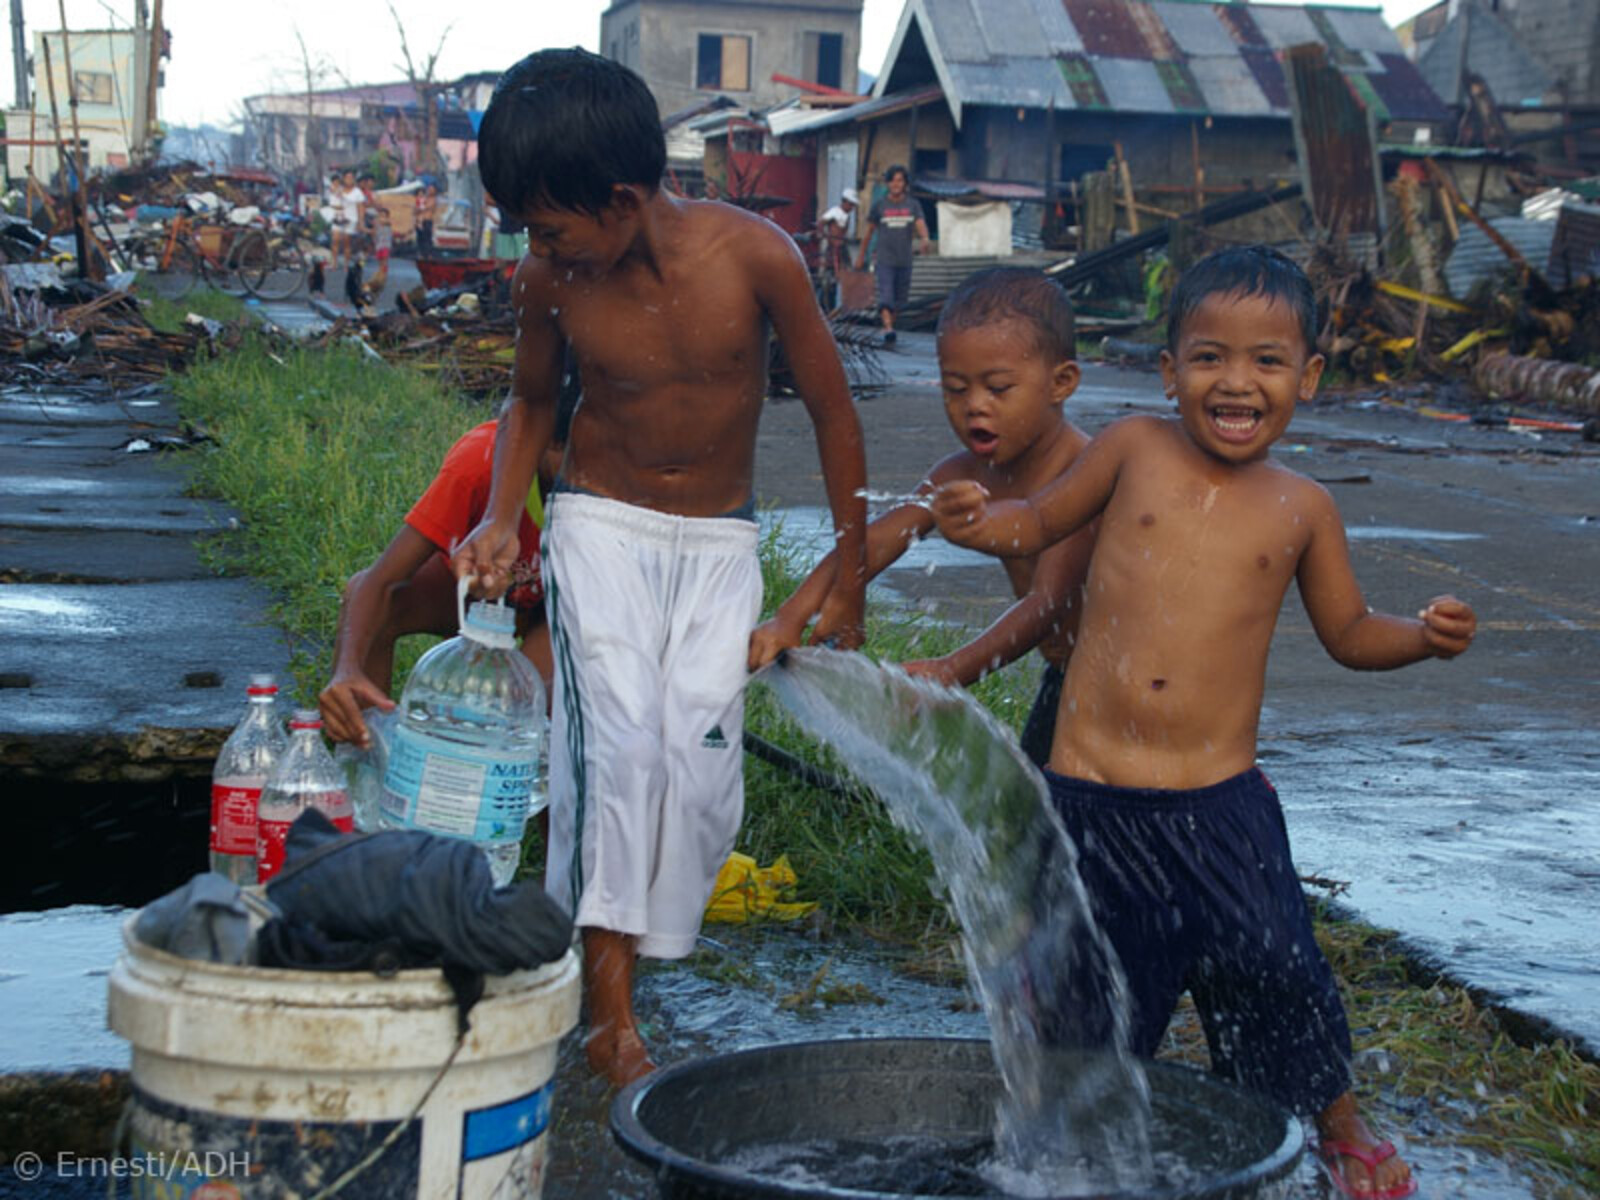 Kinder spielen unbeschwert und freuen sich über fließendes Wasser